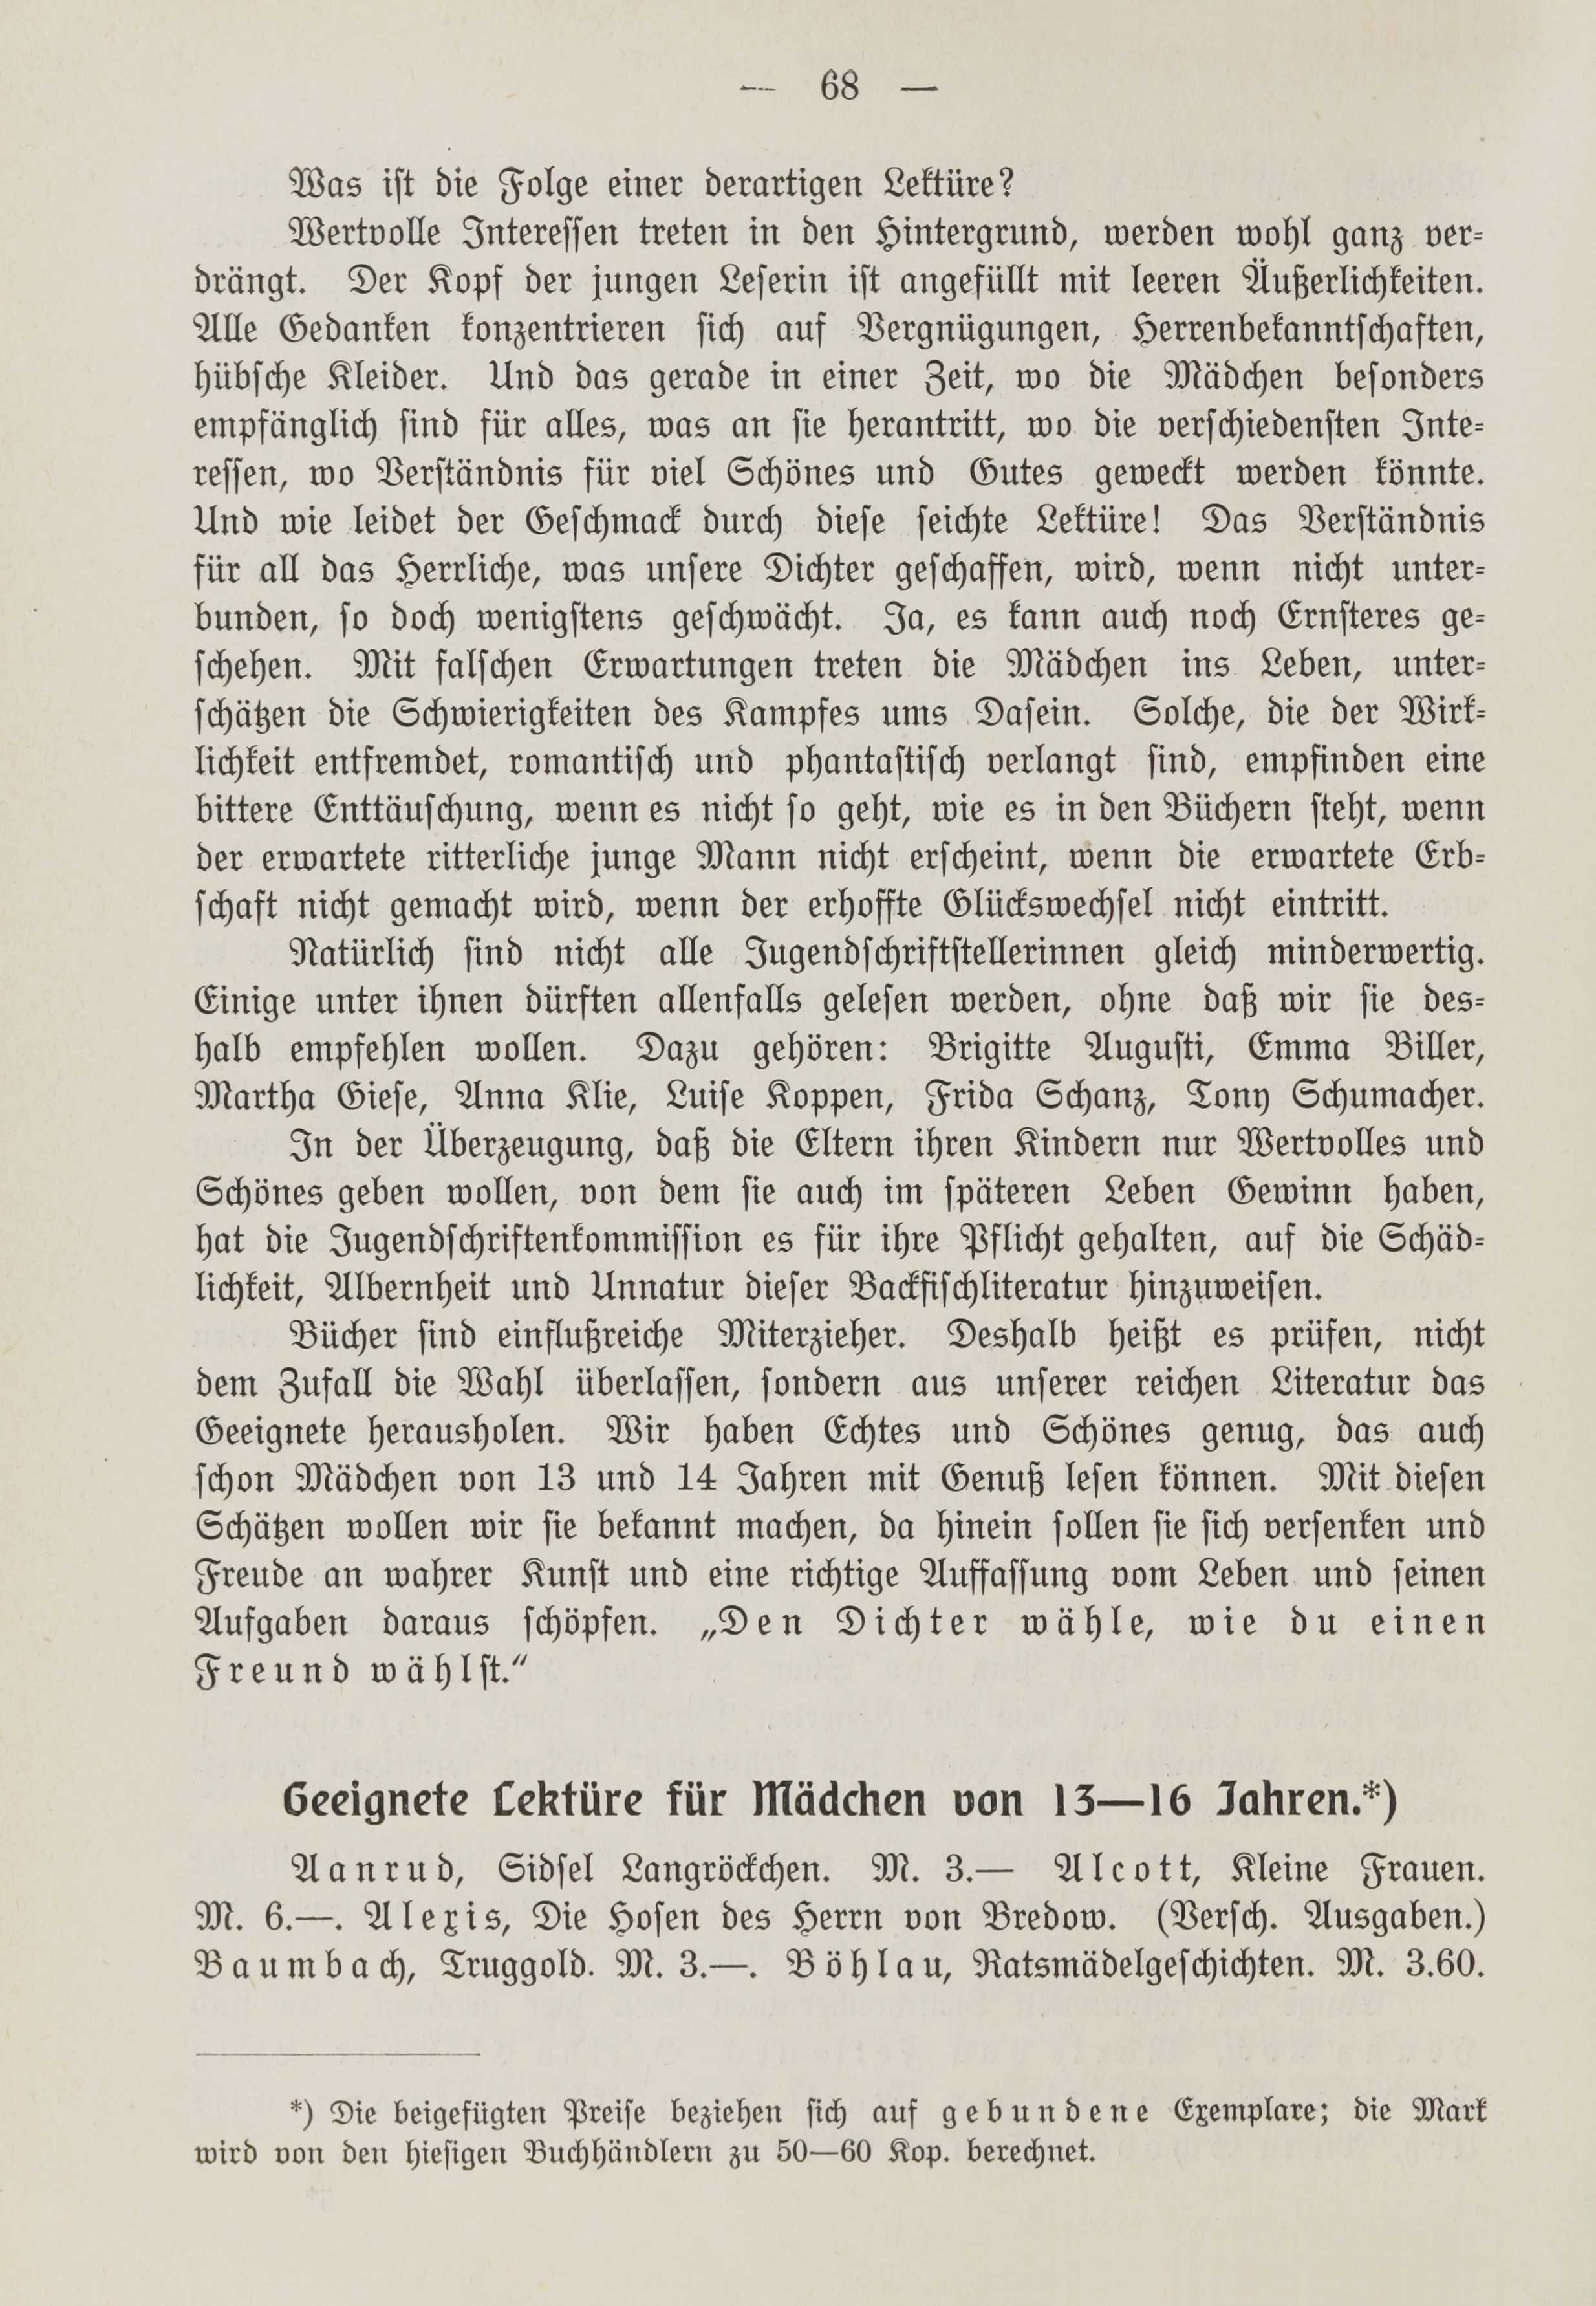 Deutsche Monatsschrift für Russland [1] (1912) | 75. (68) Main body of text